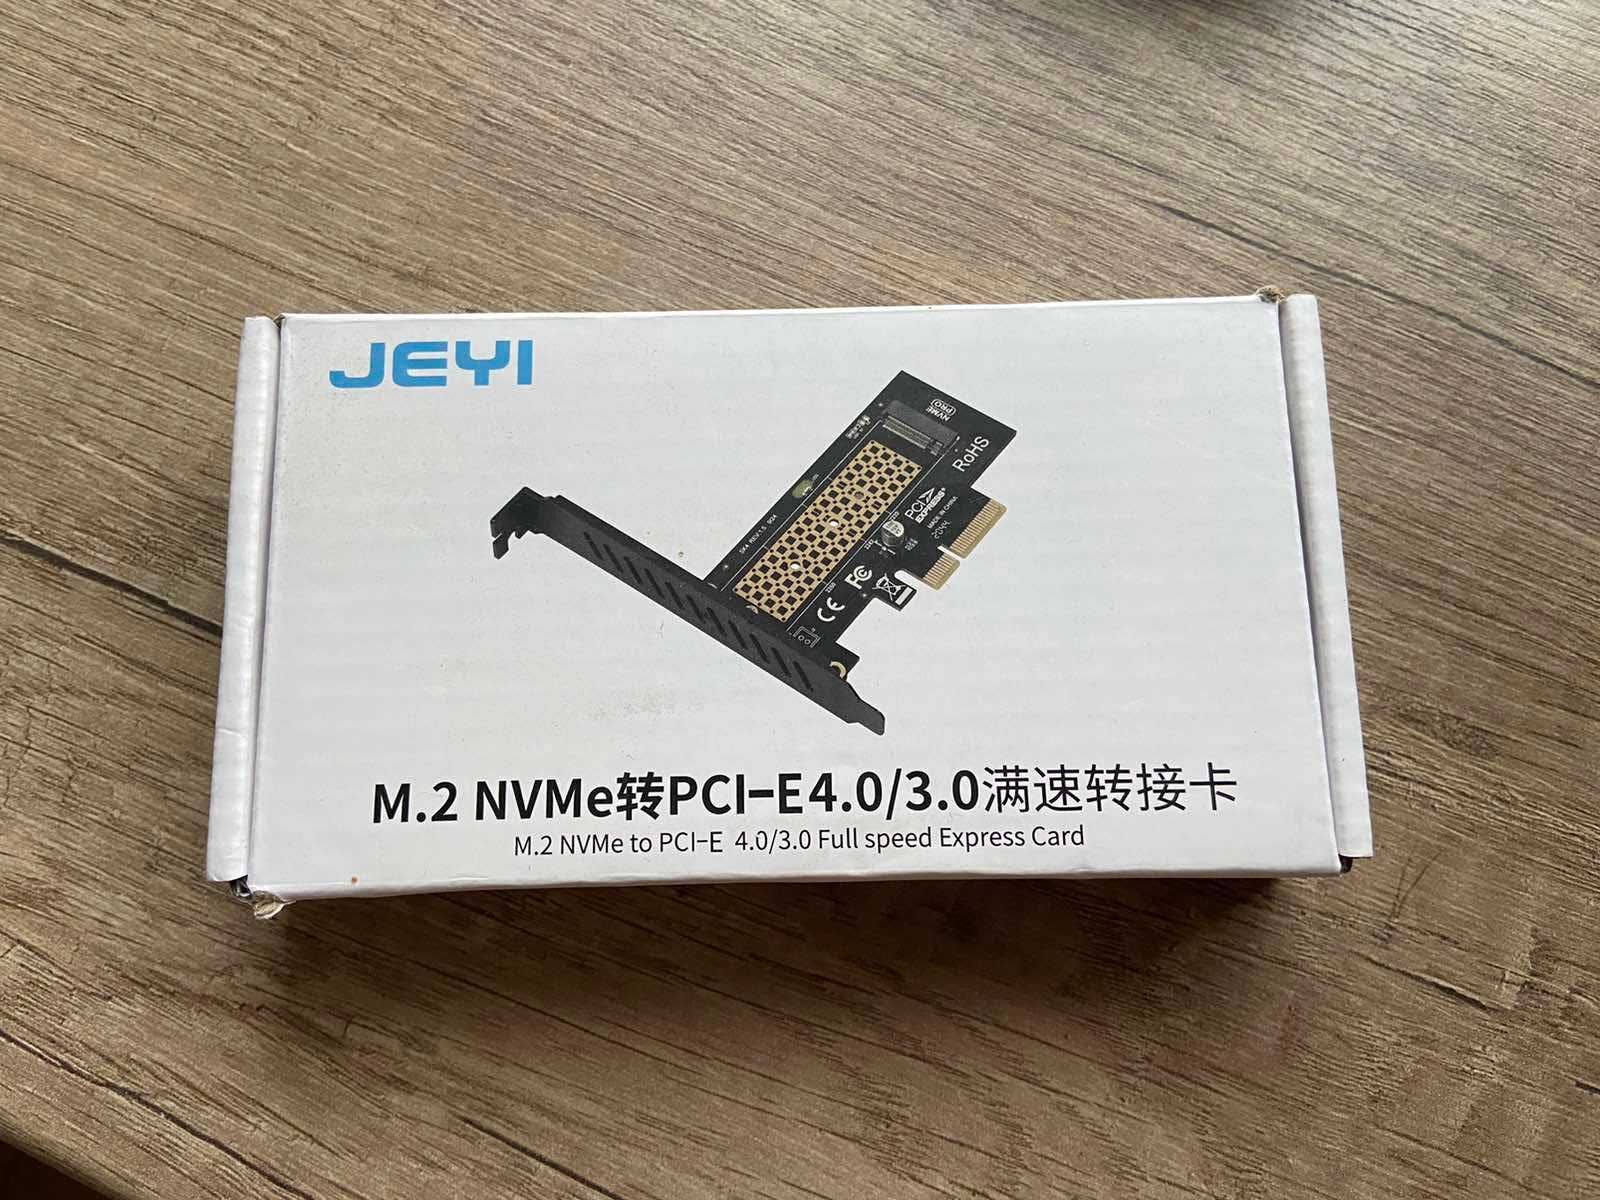 Карман з M.2 NVMe to PCI-E новий, запакований, не відкривався